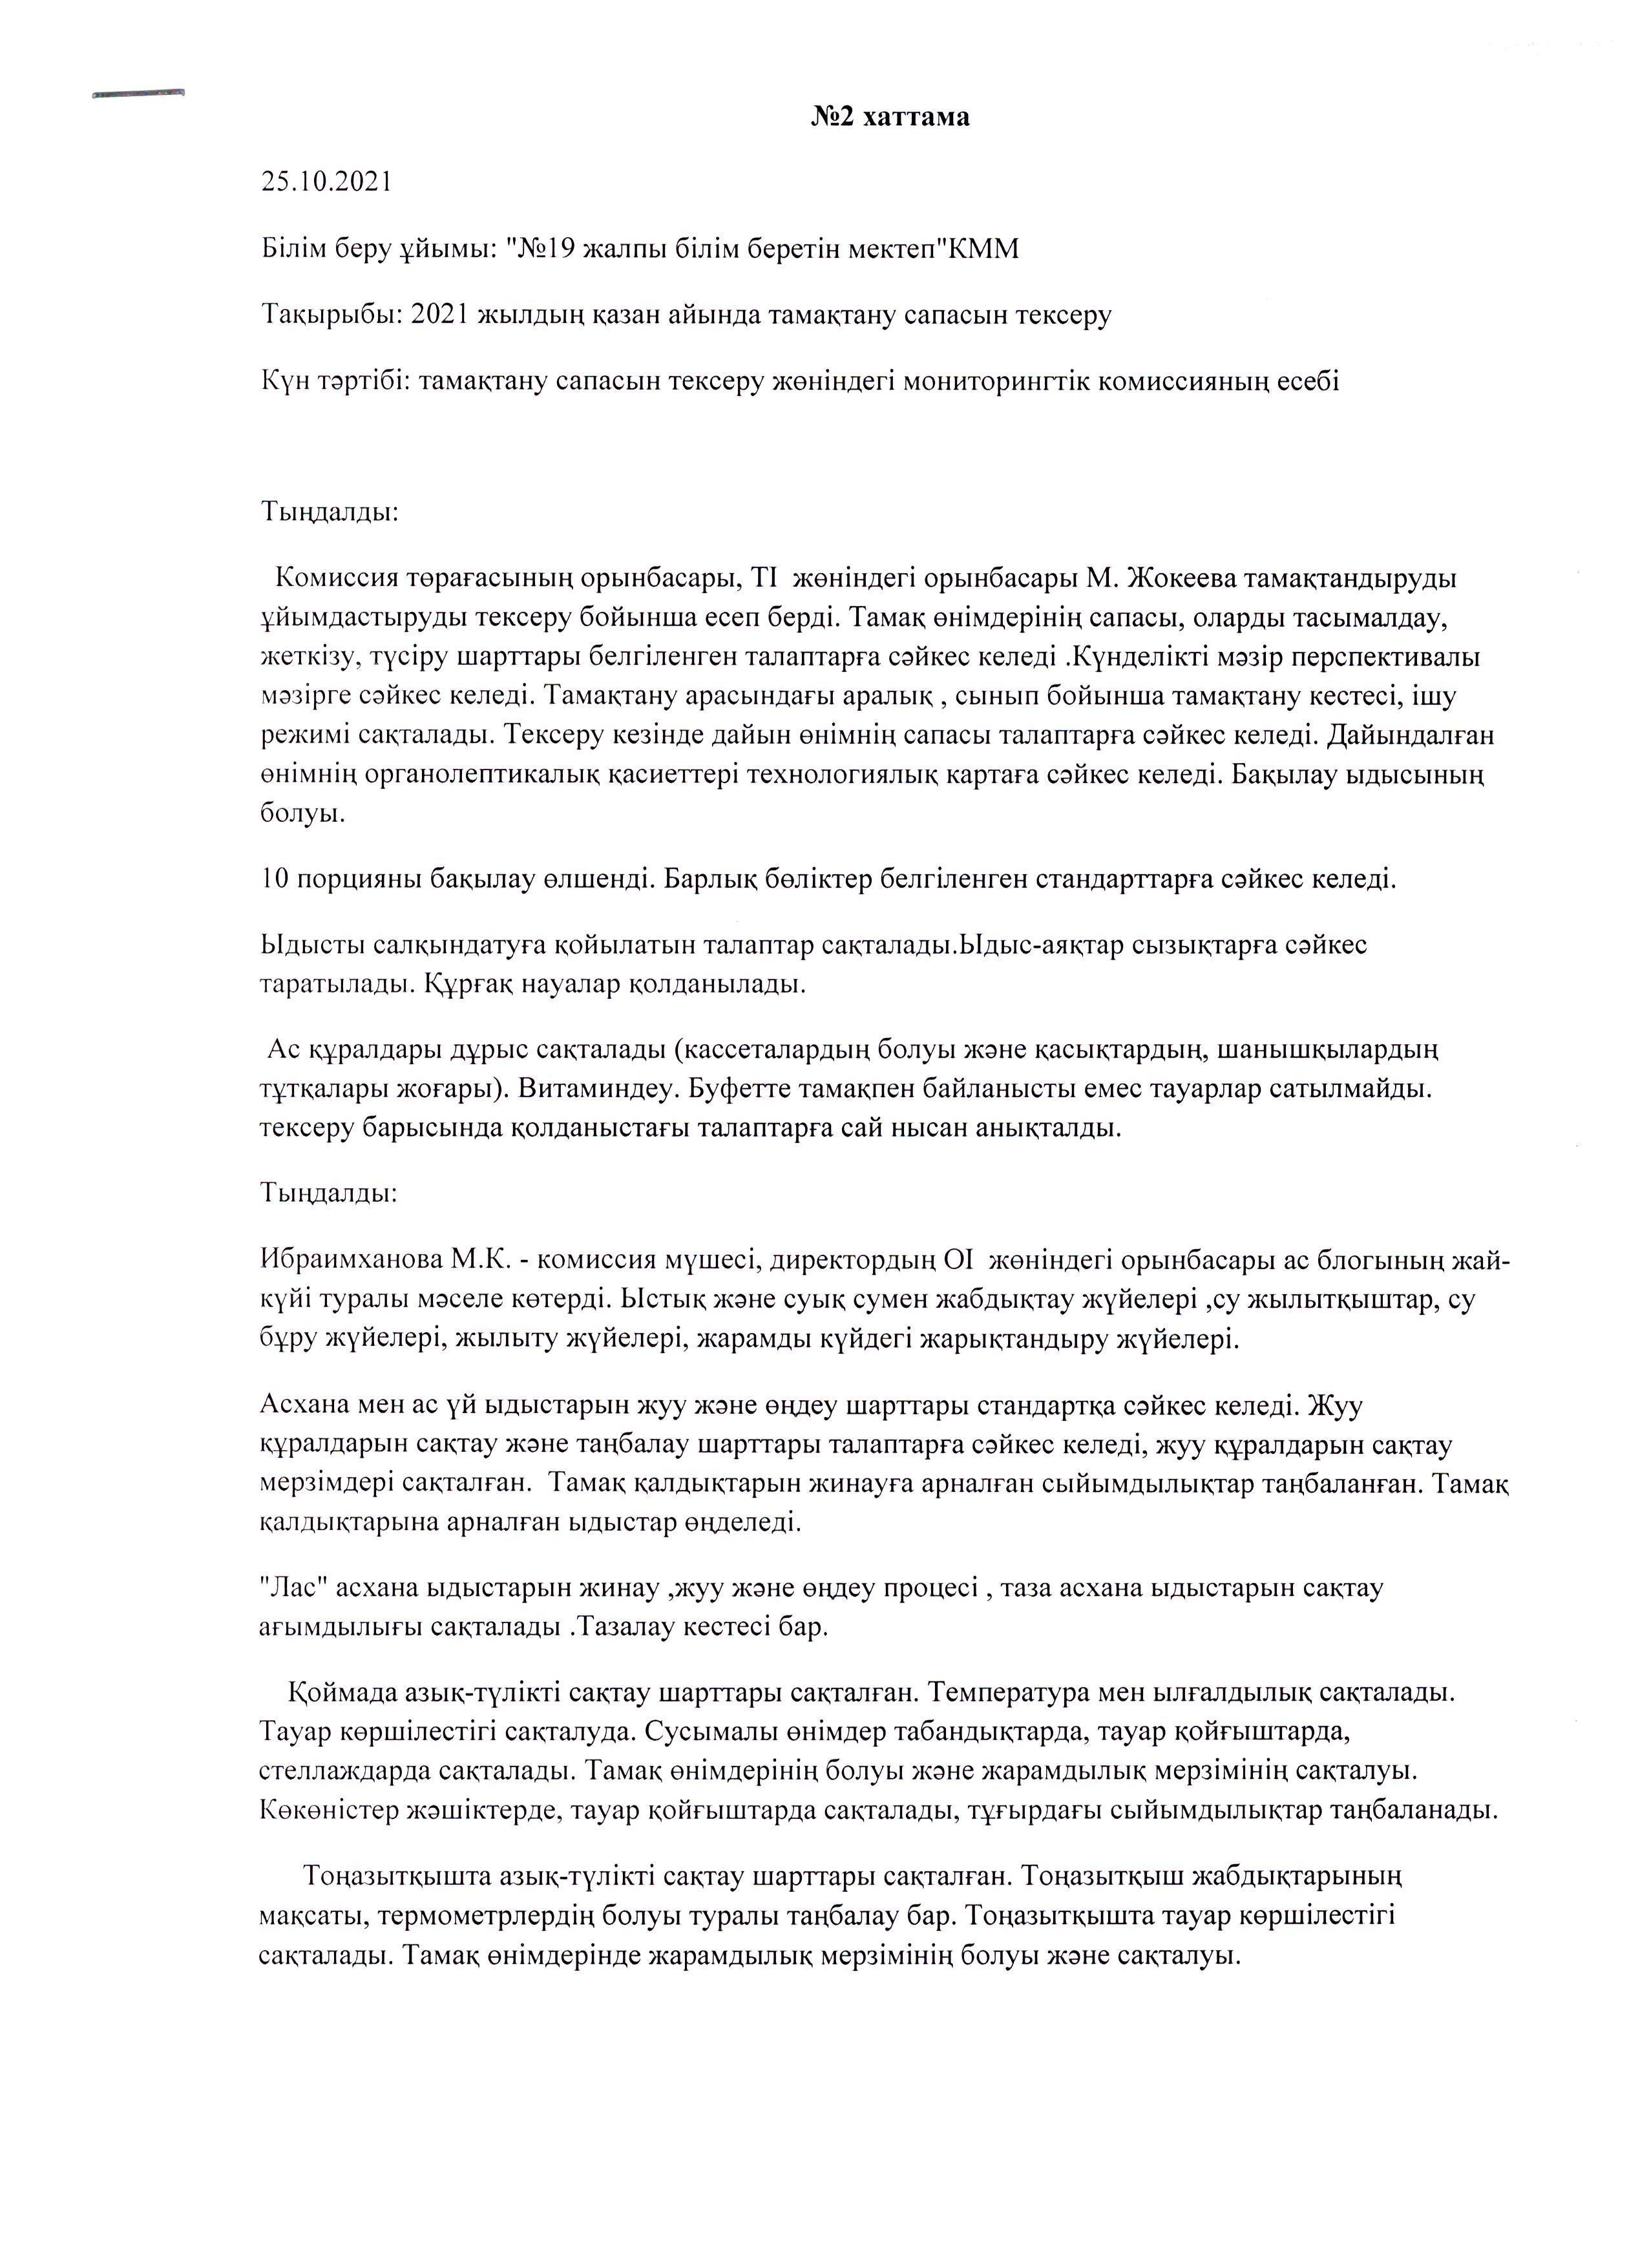 Қазан айындағы мониторинг комиссиясының хаттамасы/ Протокол мониторинговой комиссии за Қазан